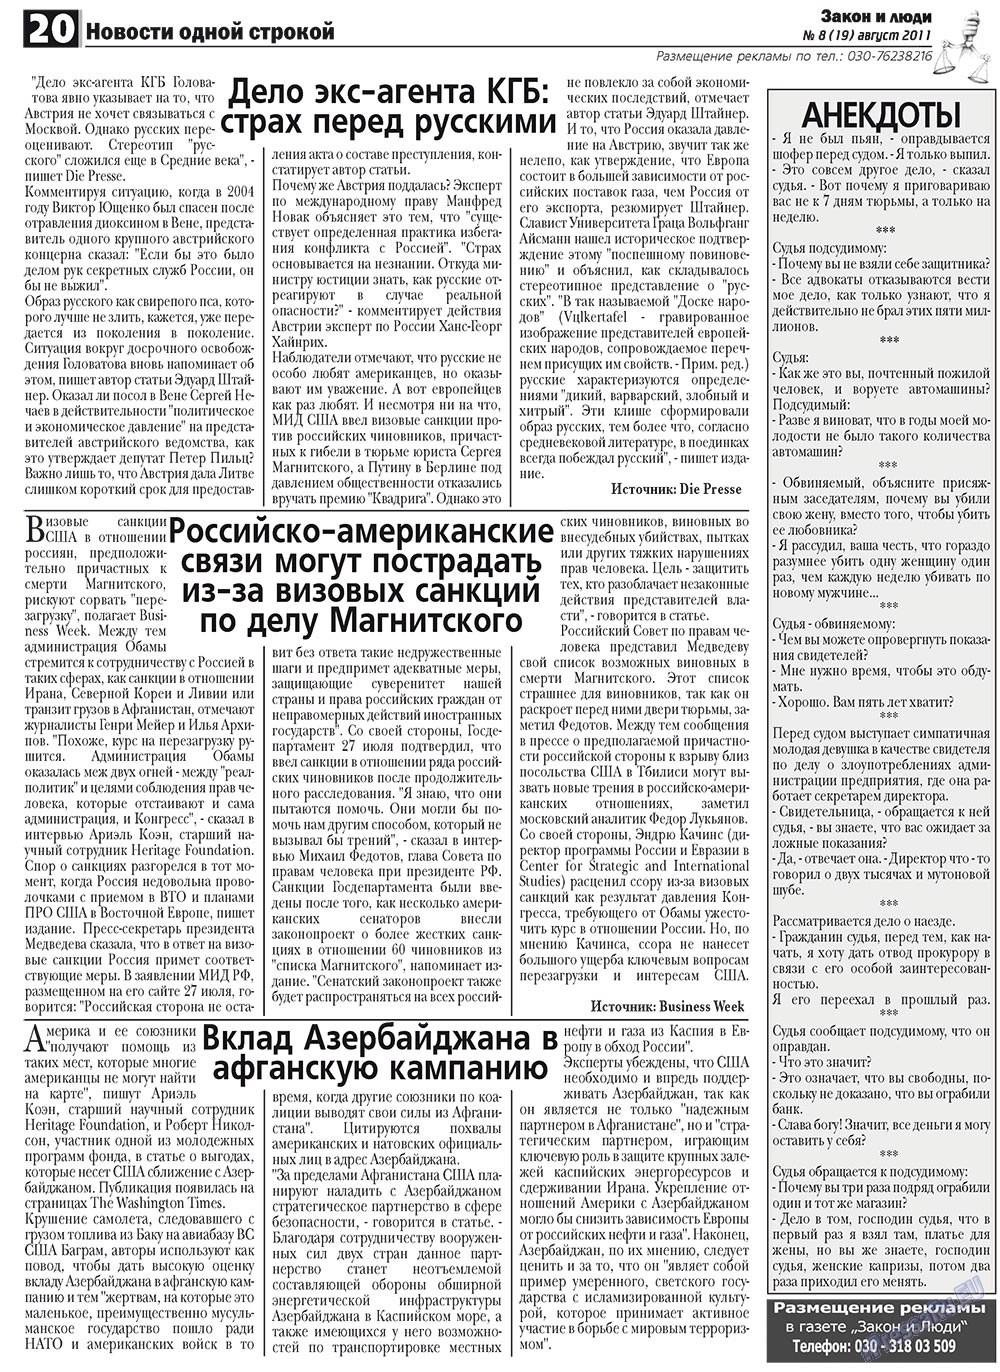 Закон и люди, газета. 2011 №8 стр.20